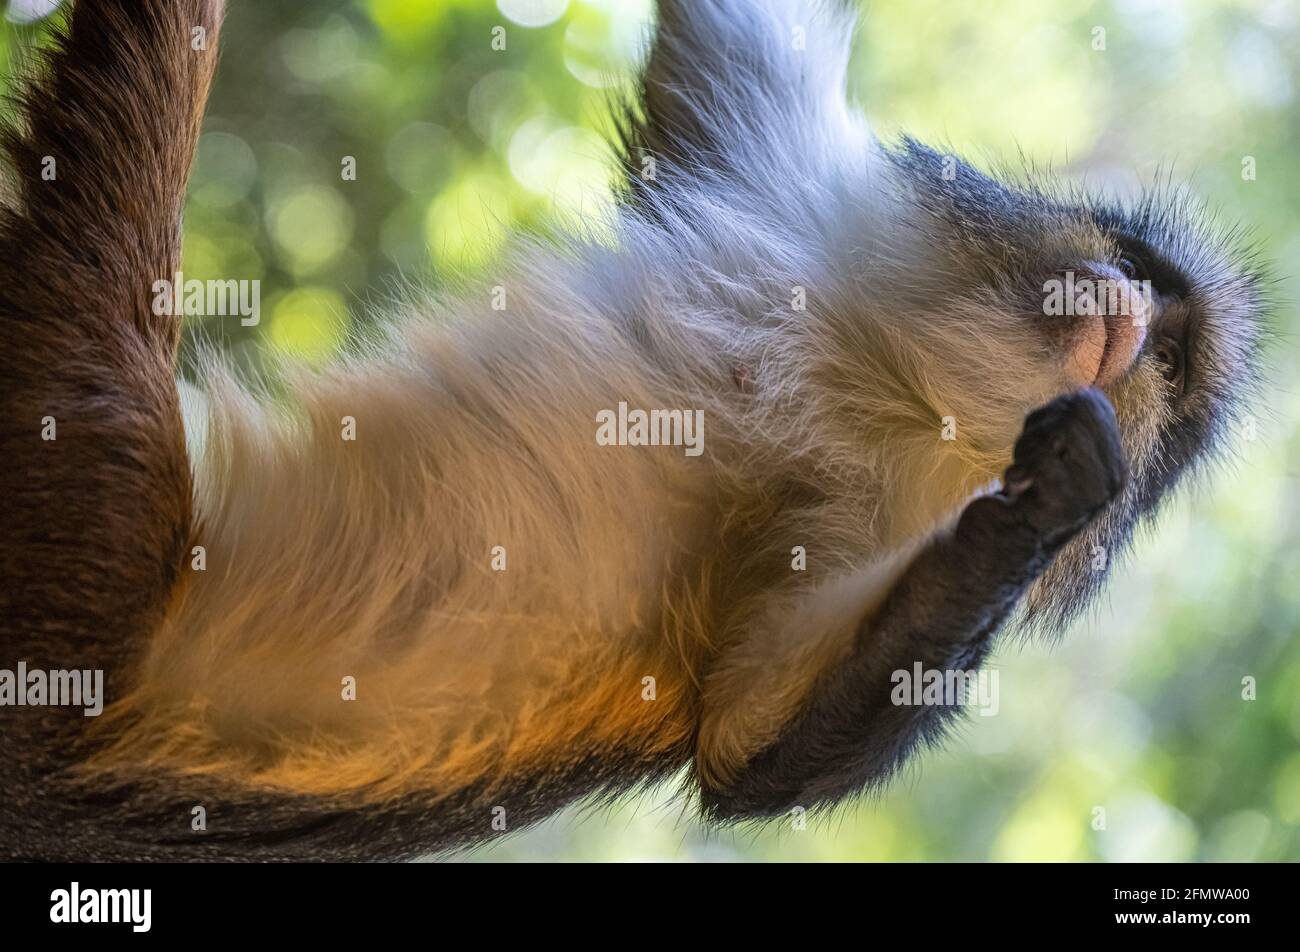 Le Guenon du Loup (Cercopithecus wolfii), un singe de l'ancien monde originaire du Moyen-Orient, au zoo d'Atlanta, en Géorgie. (ÉTATS-UNIS) Banque D'Images